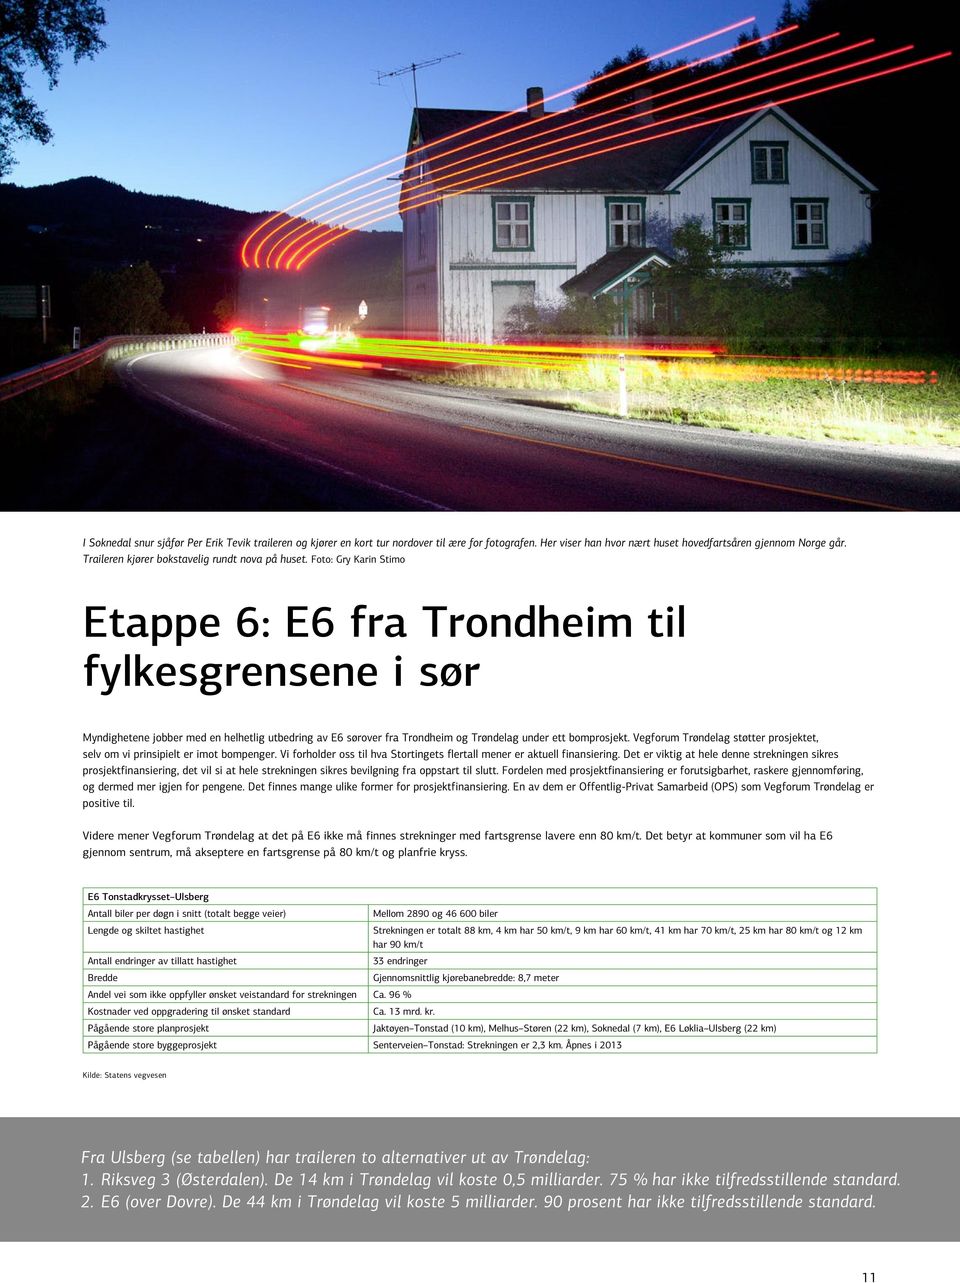 Foto: Gry Karin Stimo Etappe 6: E6 fra Trondheim til fylkesgrensene i sør Myndighetene jobber med en helhetlig utbedring av E6 sørover fra Trondheim og Trøndelag under ett bomprosjekt.